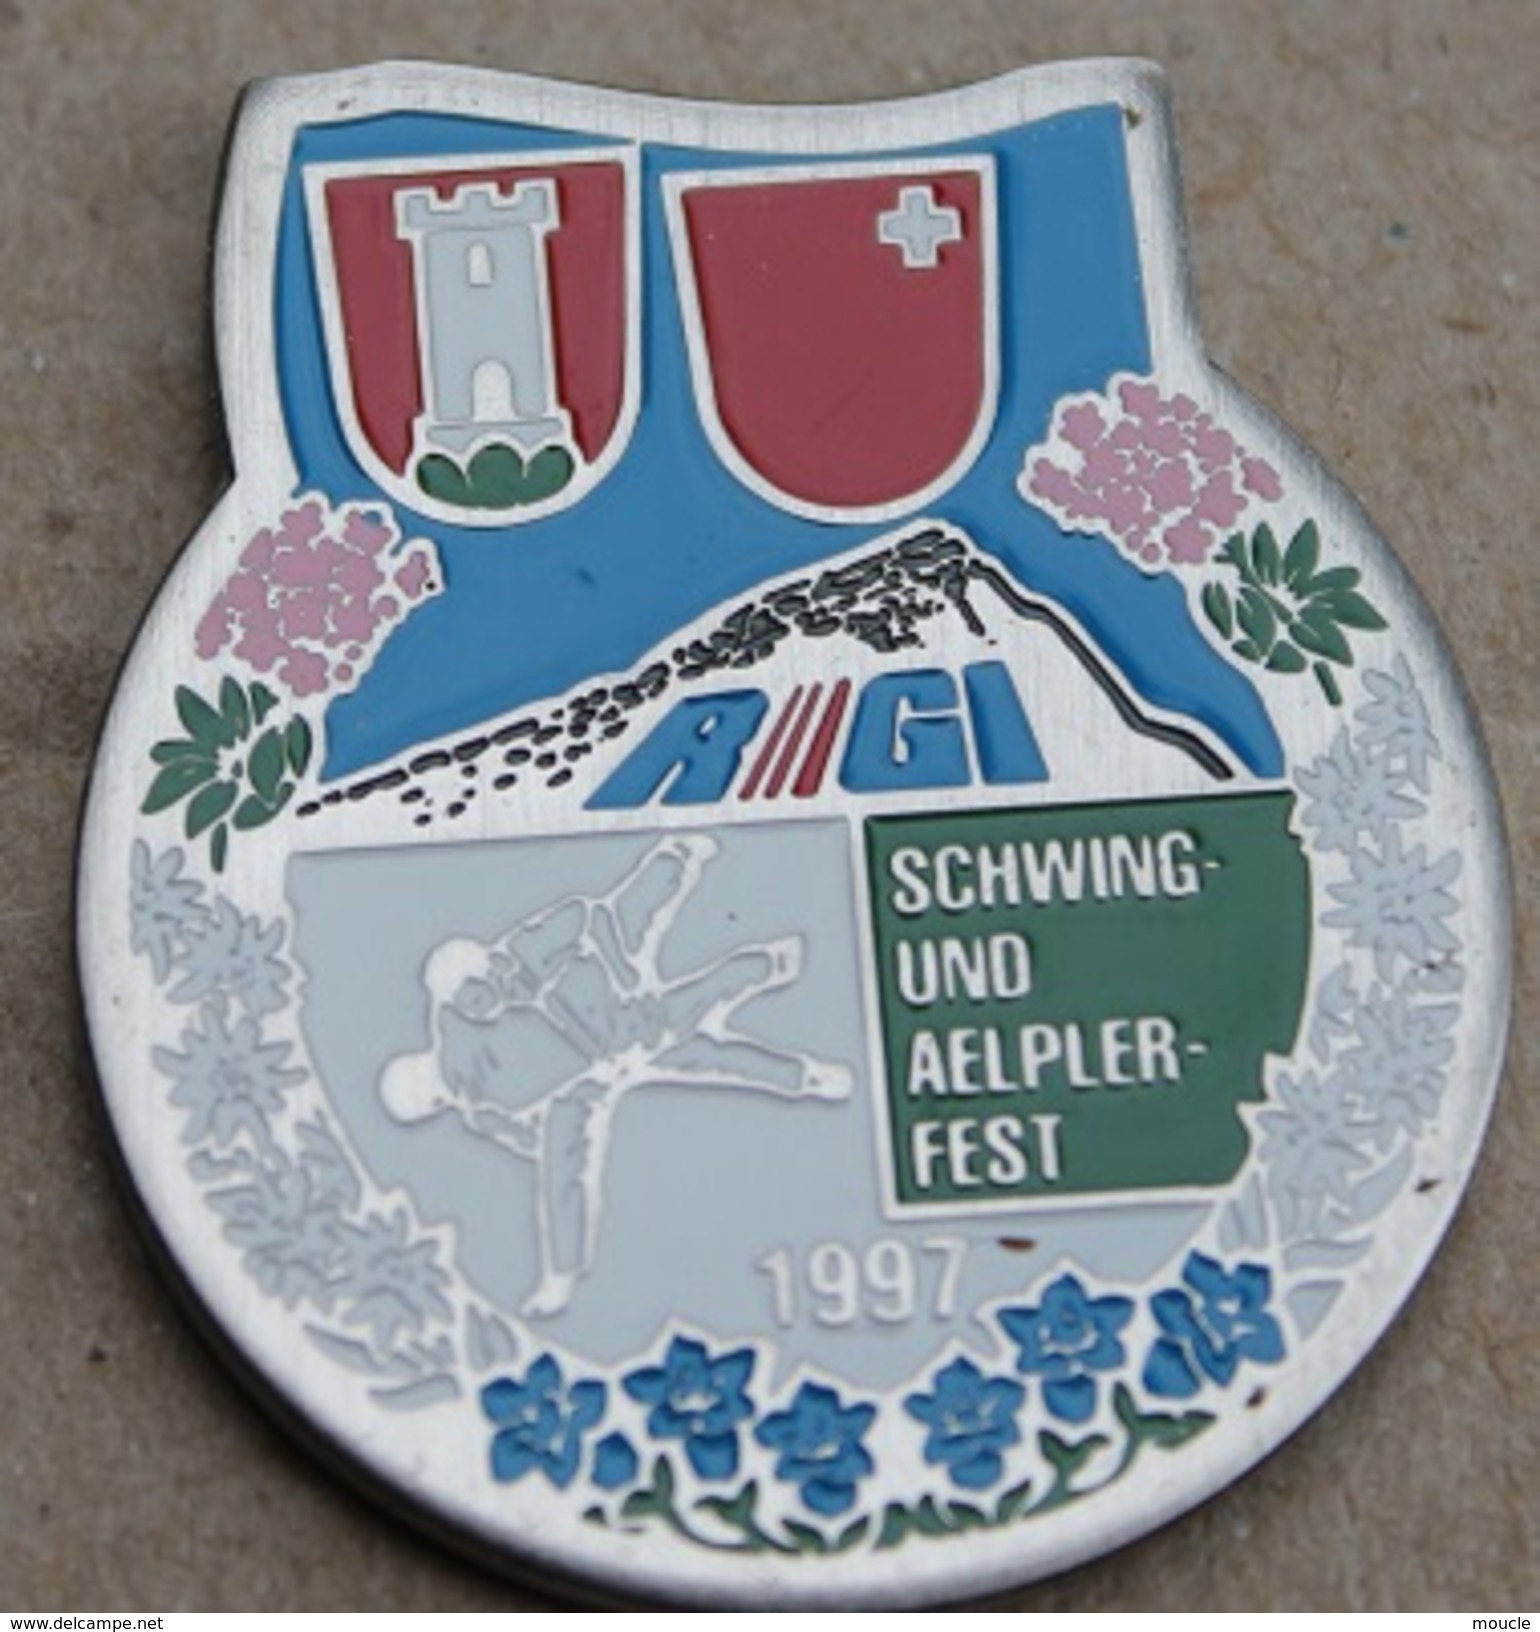 LUTTE SUISSE - SCHWING UND AELPLERFEST 1997 - SUISSE - SCHWEIZ - SWIZTERLAND - RIGI - DRAPEAU CANTON DE SCHWYZ -    (14) - Ringen